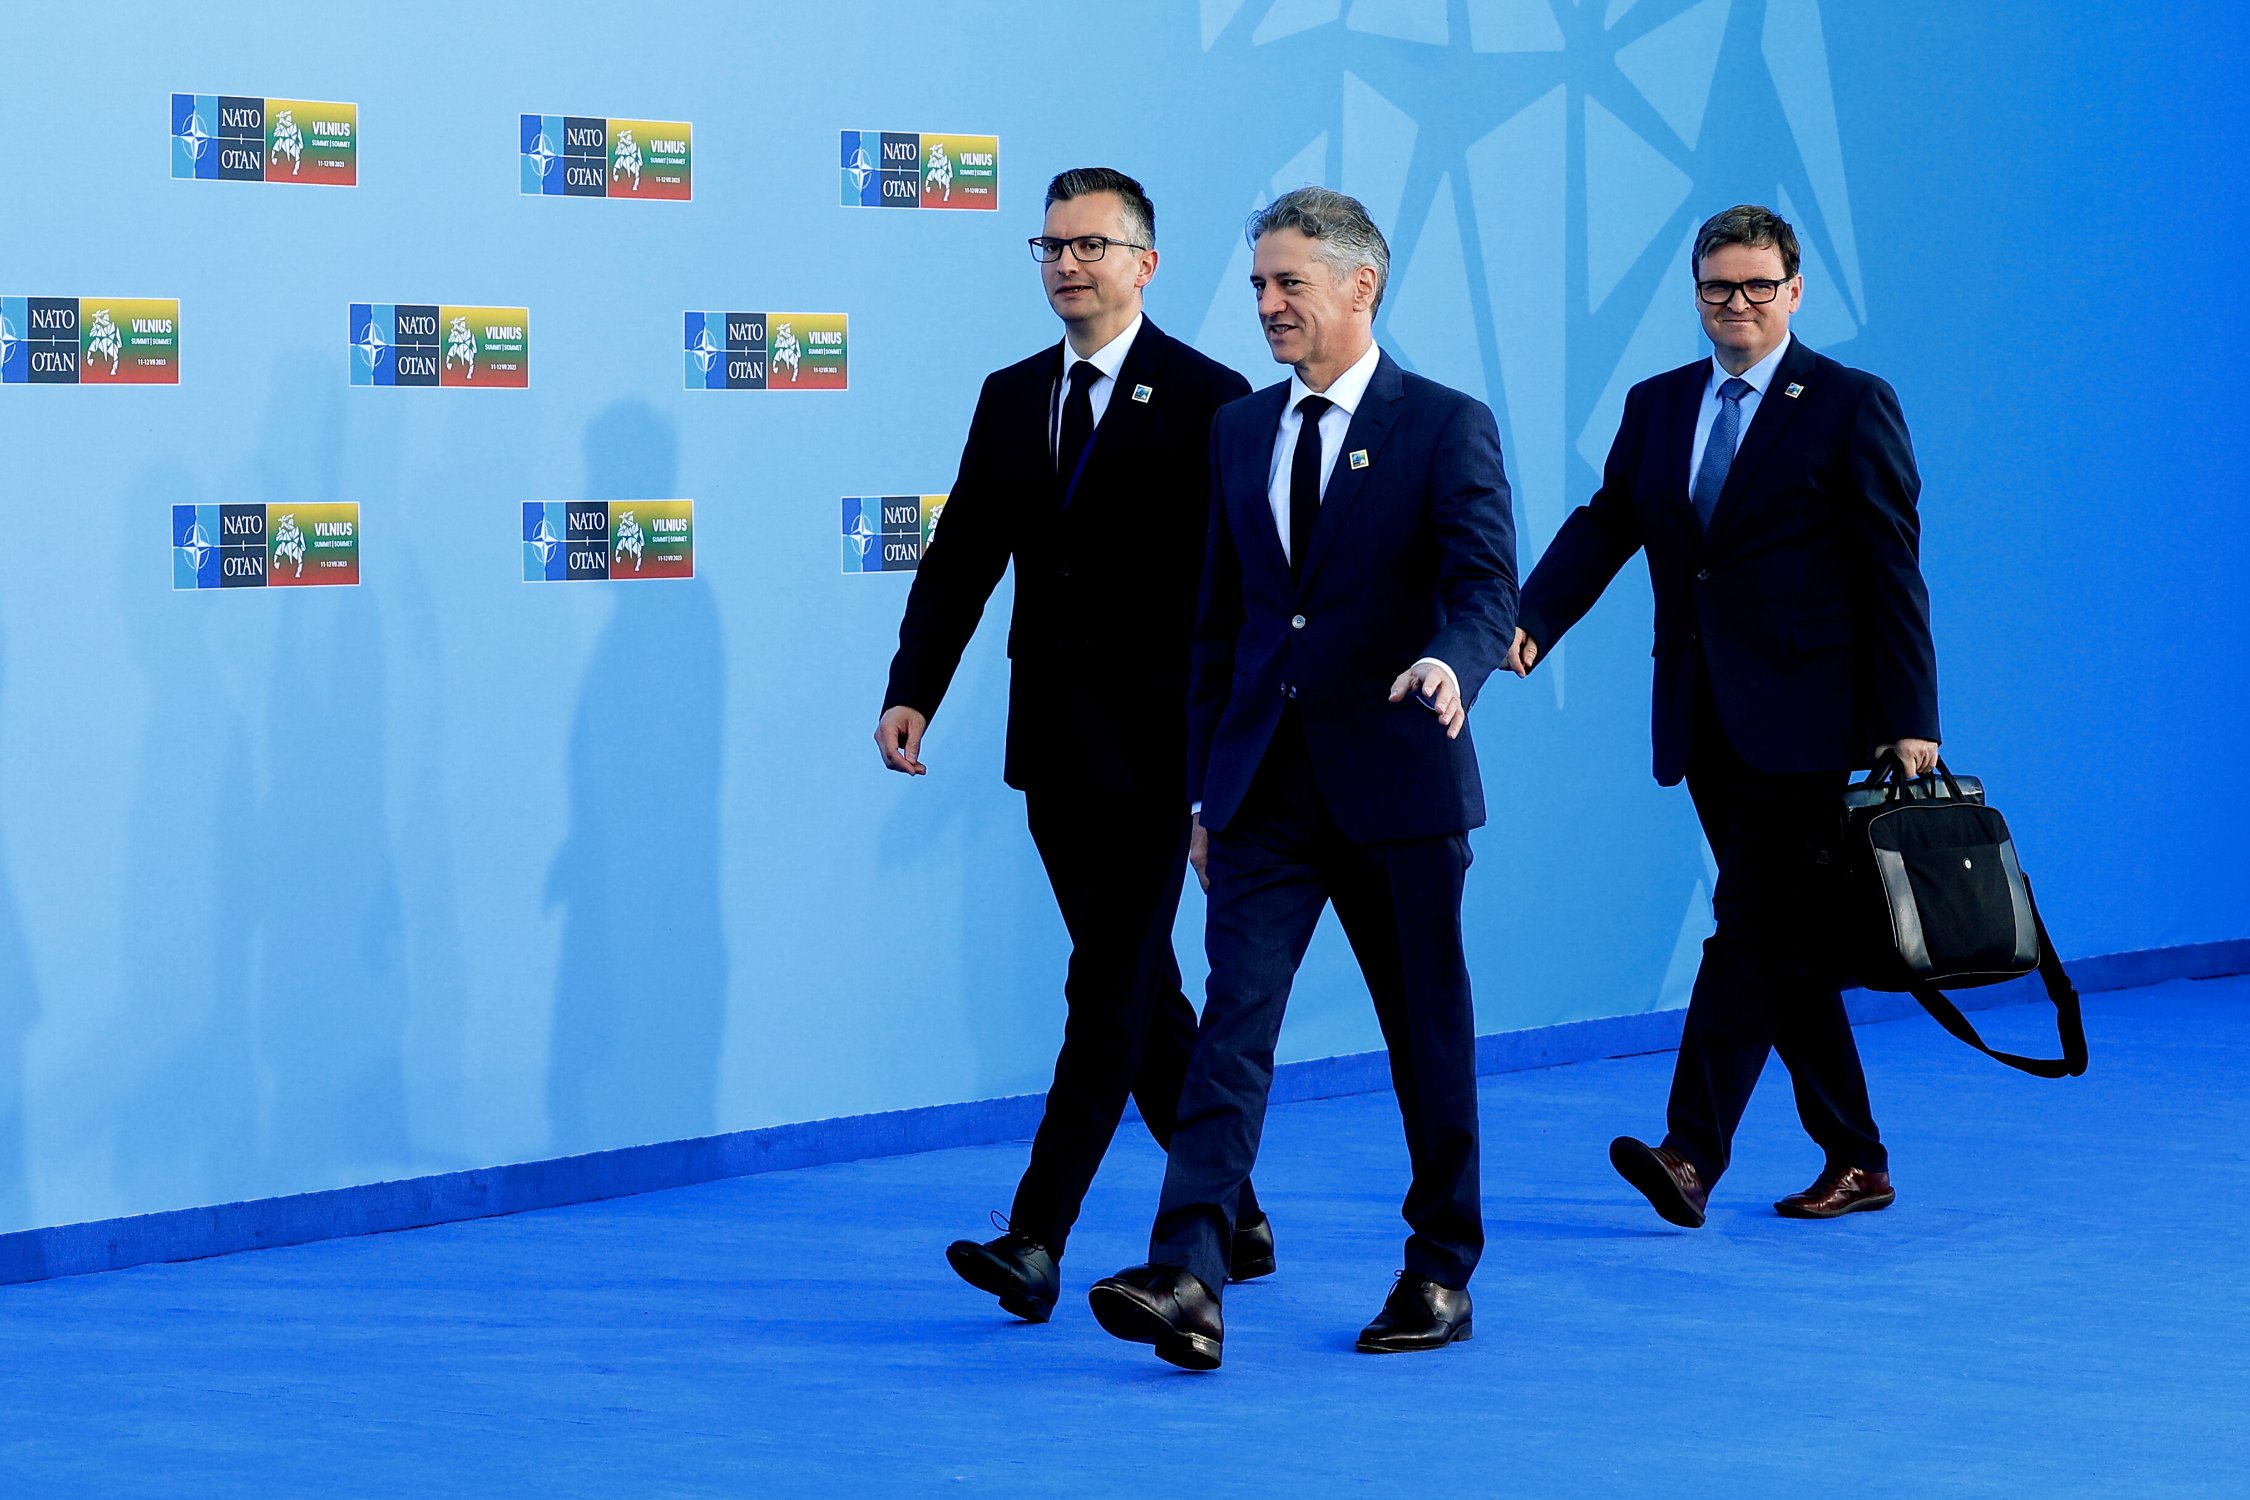 Med podpisniki tokratnega “Odprtega pisma državnemu vrhu,” glede slovenskega stališča do vojne Ukrajini, tokrat ni Milana Kučana in Danila Turka